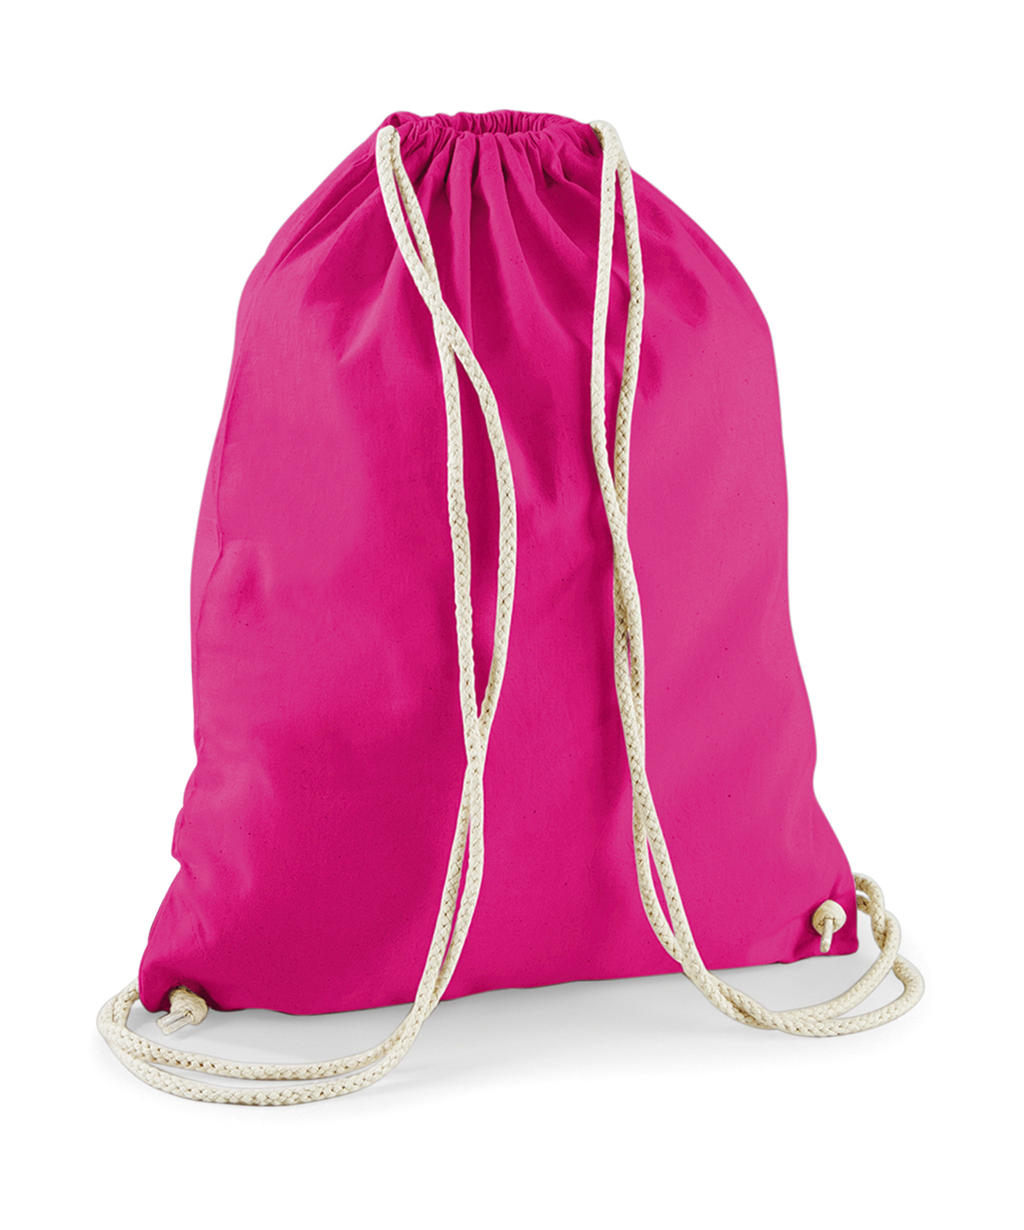 Сумка мешок из хлопка. Розовый мешок. Розовый спортивный мешок. Рюкзак мешок из полиамида женский легкий.